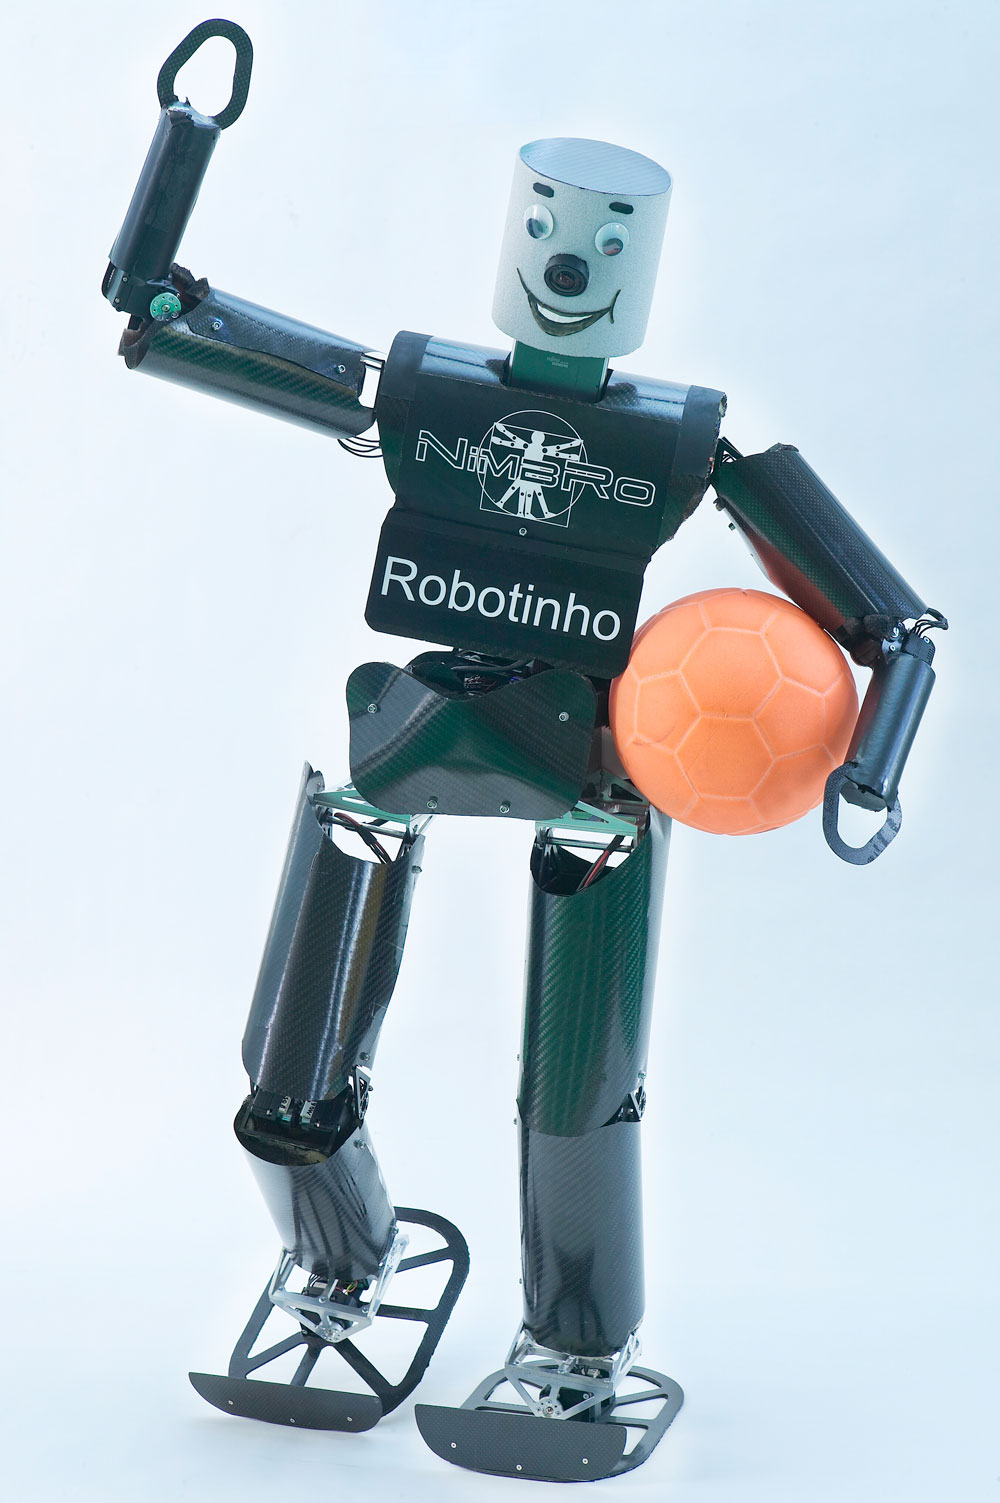 Robotinho